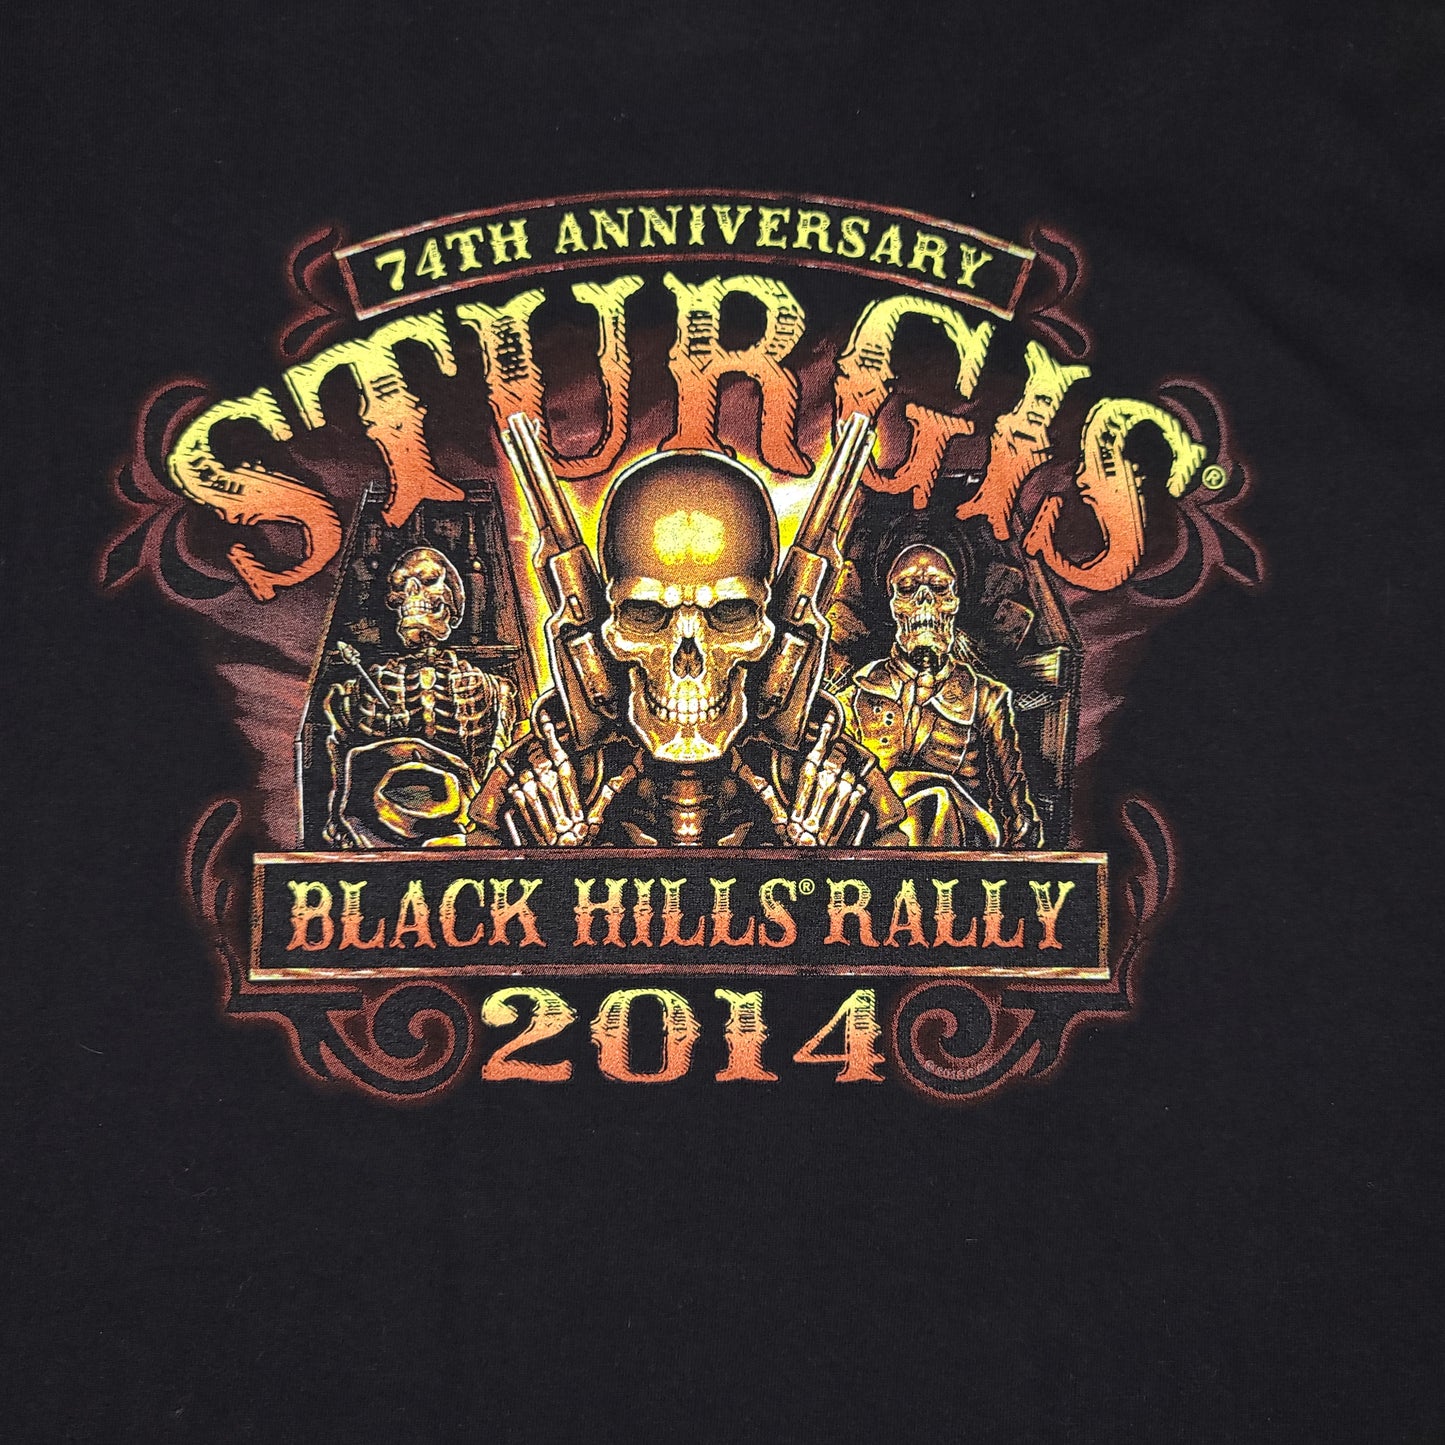 Sturgis 2014 Black Hills Rally Tee